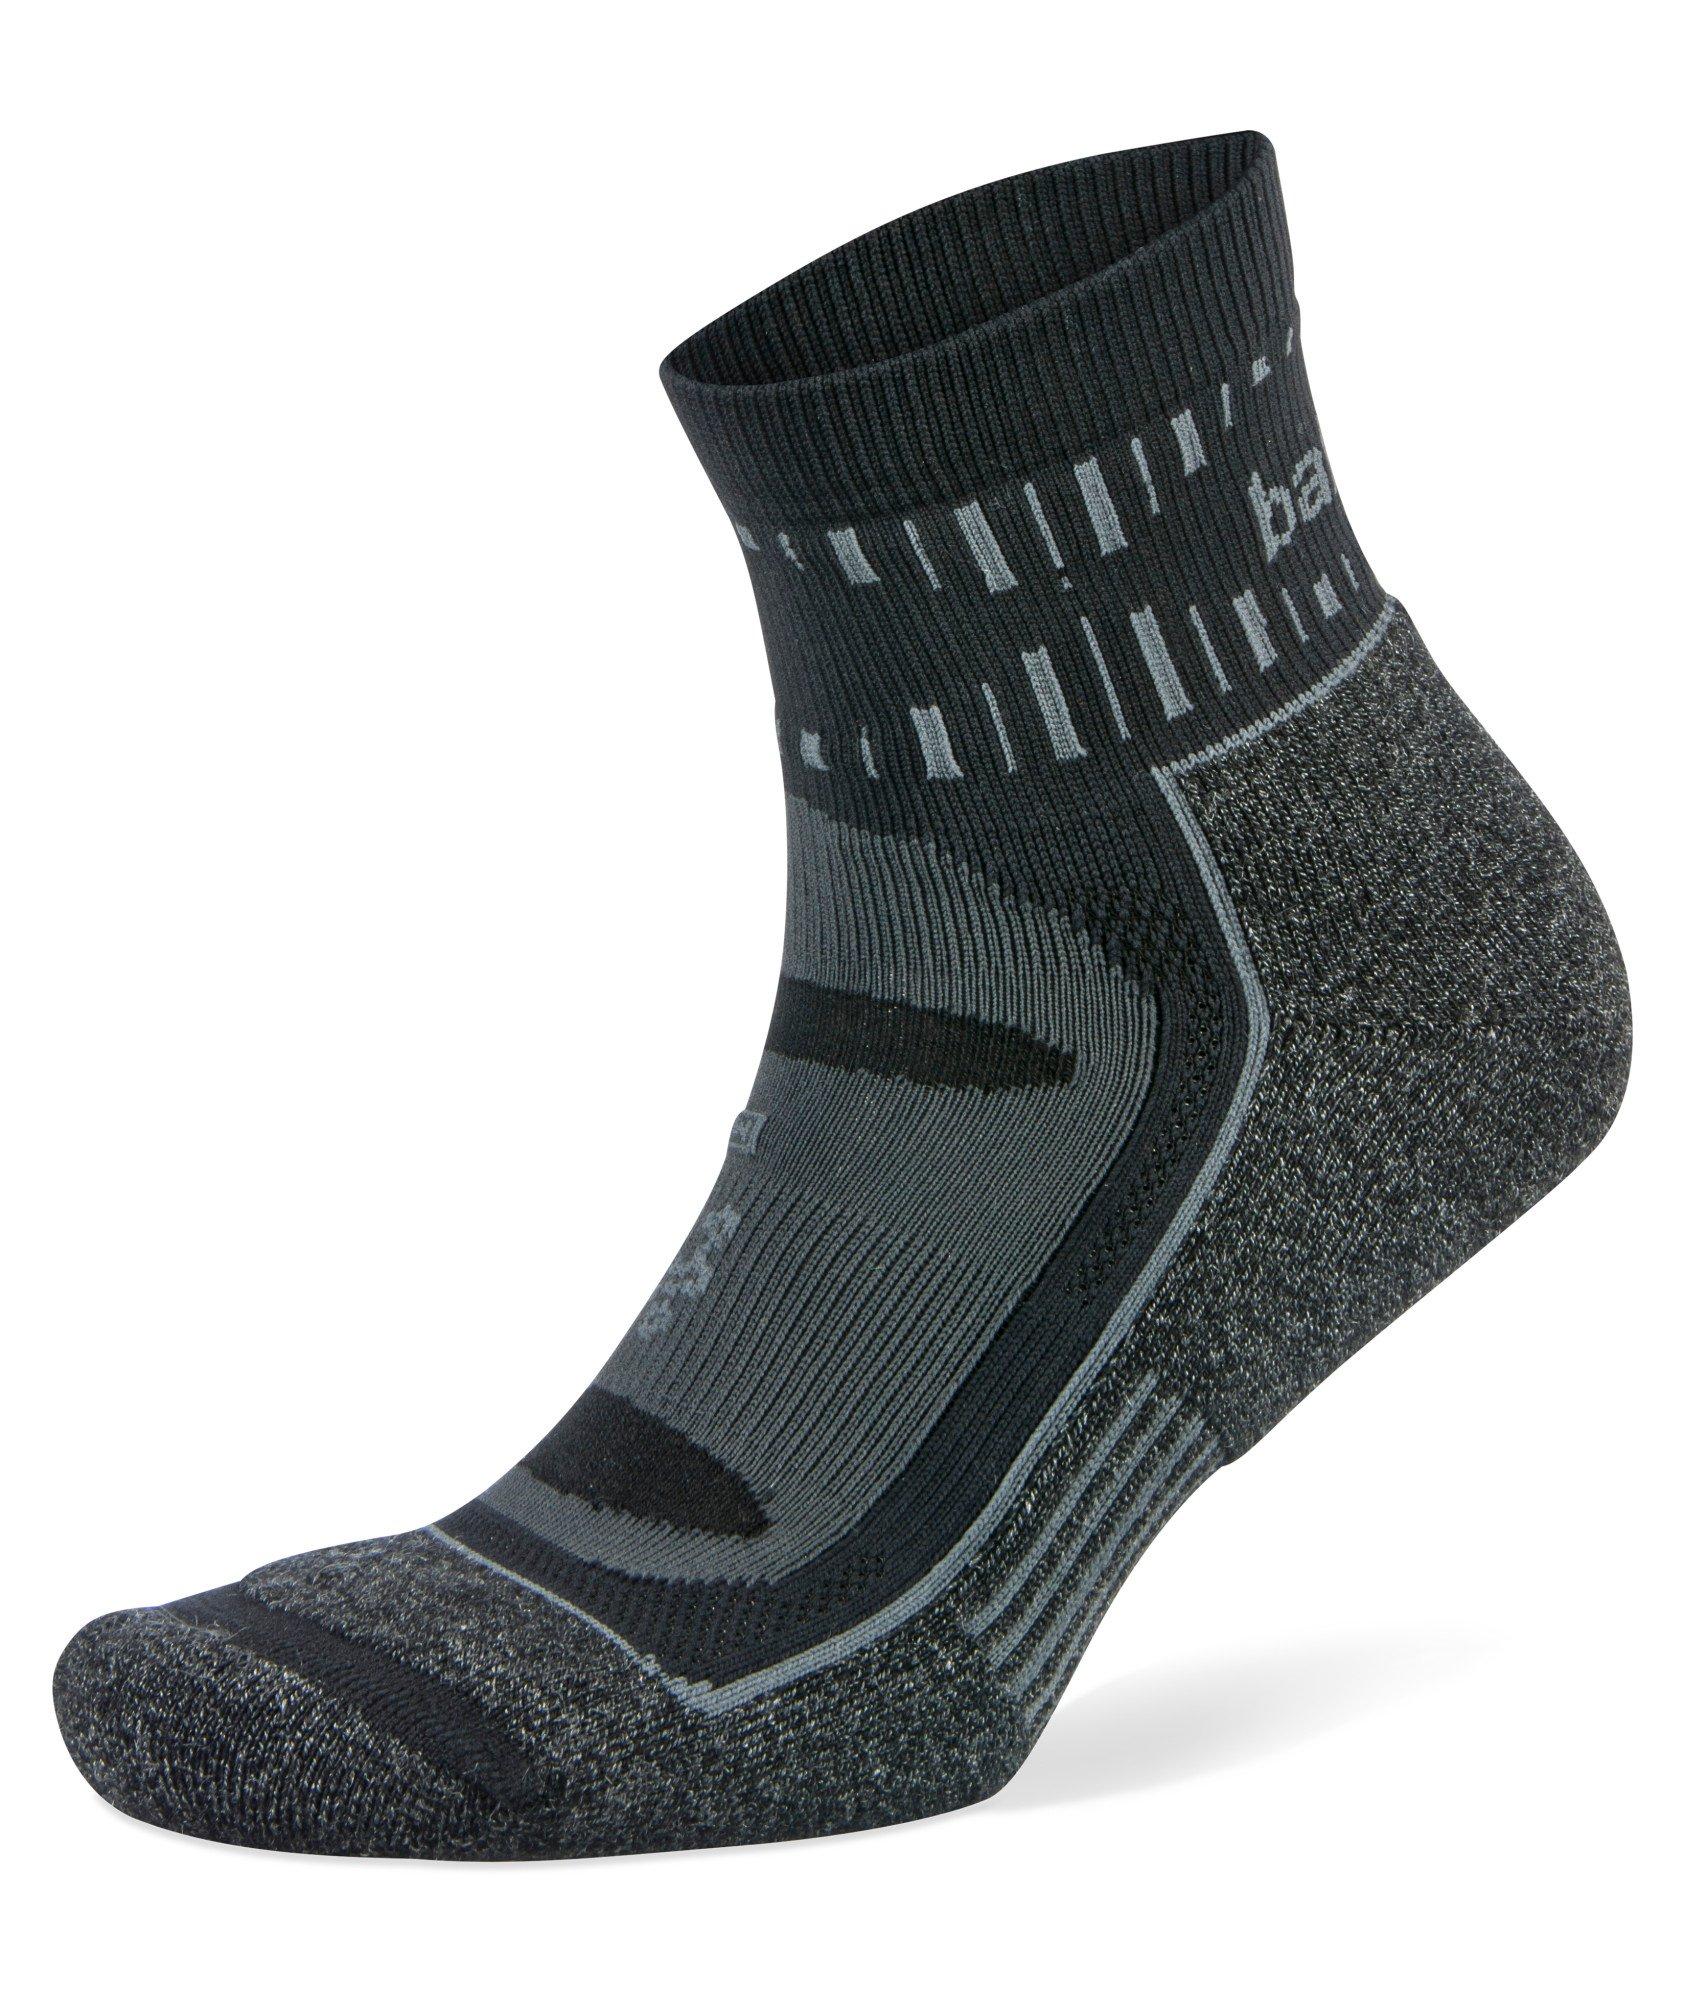 Harry Rosen Blister Resist Mohair Quarter Socks. 1